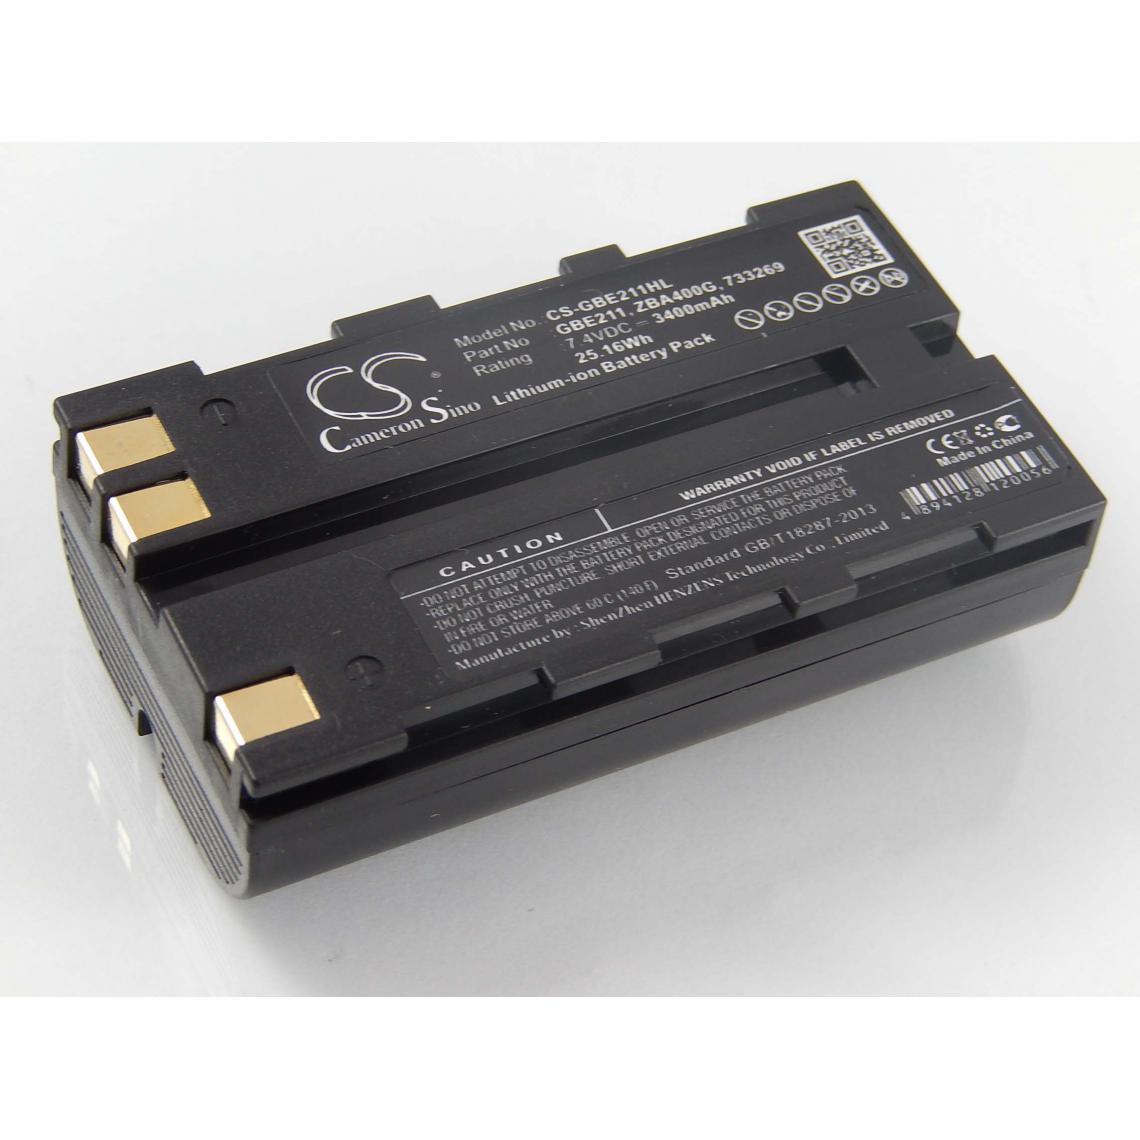 Vhbw - vhbw Batterie compatible avec Geomax Zoom 20, Zoom 30, Zoom 35 dispositif de mesure laser, outil de mesure (3400mAh, 7,4V, Li-ion) - Piles rechargeables